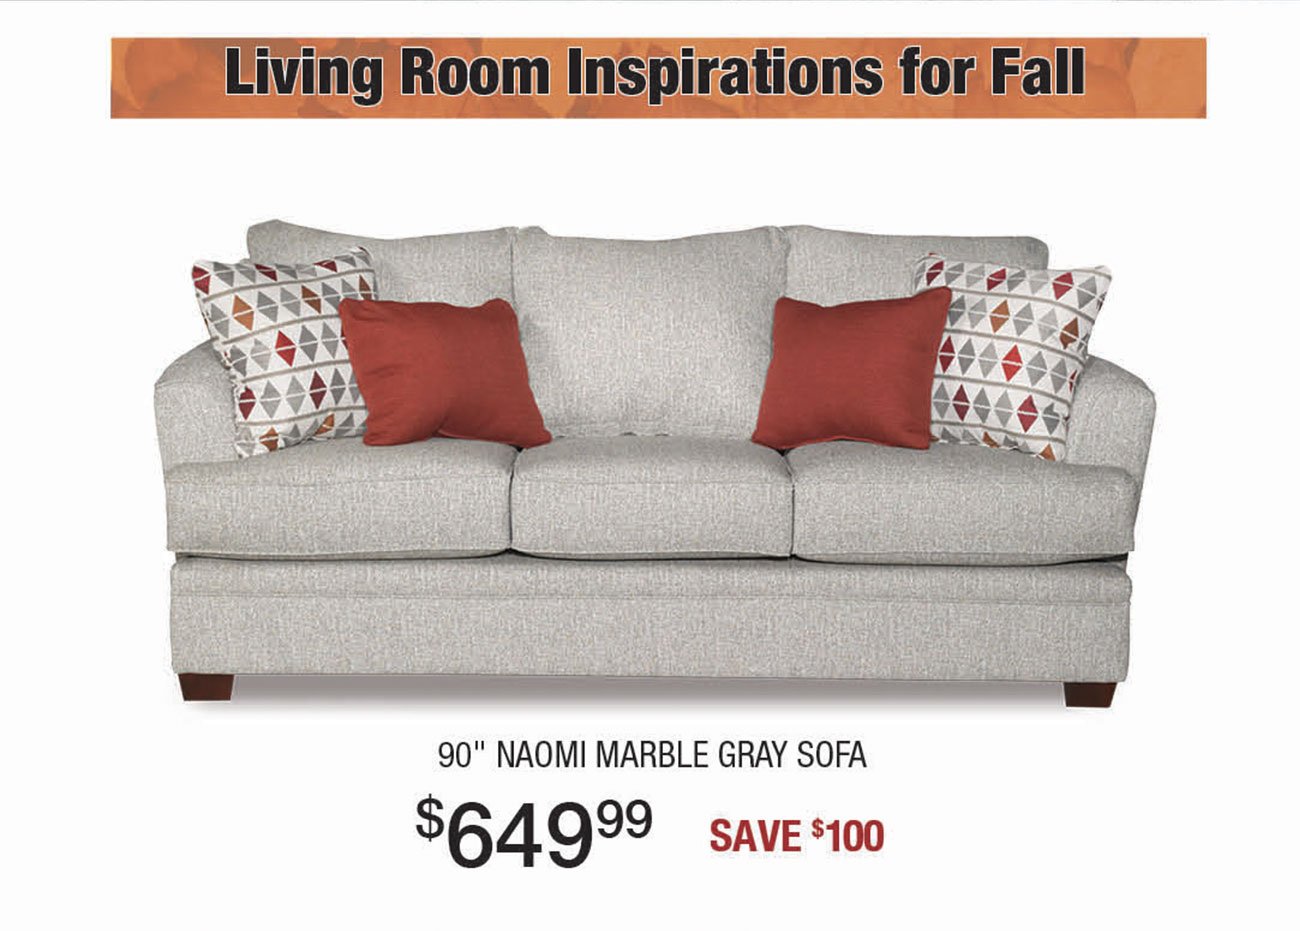 Naomi-Marble-Gray-Sofa